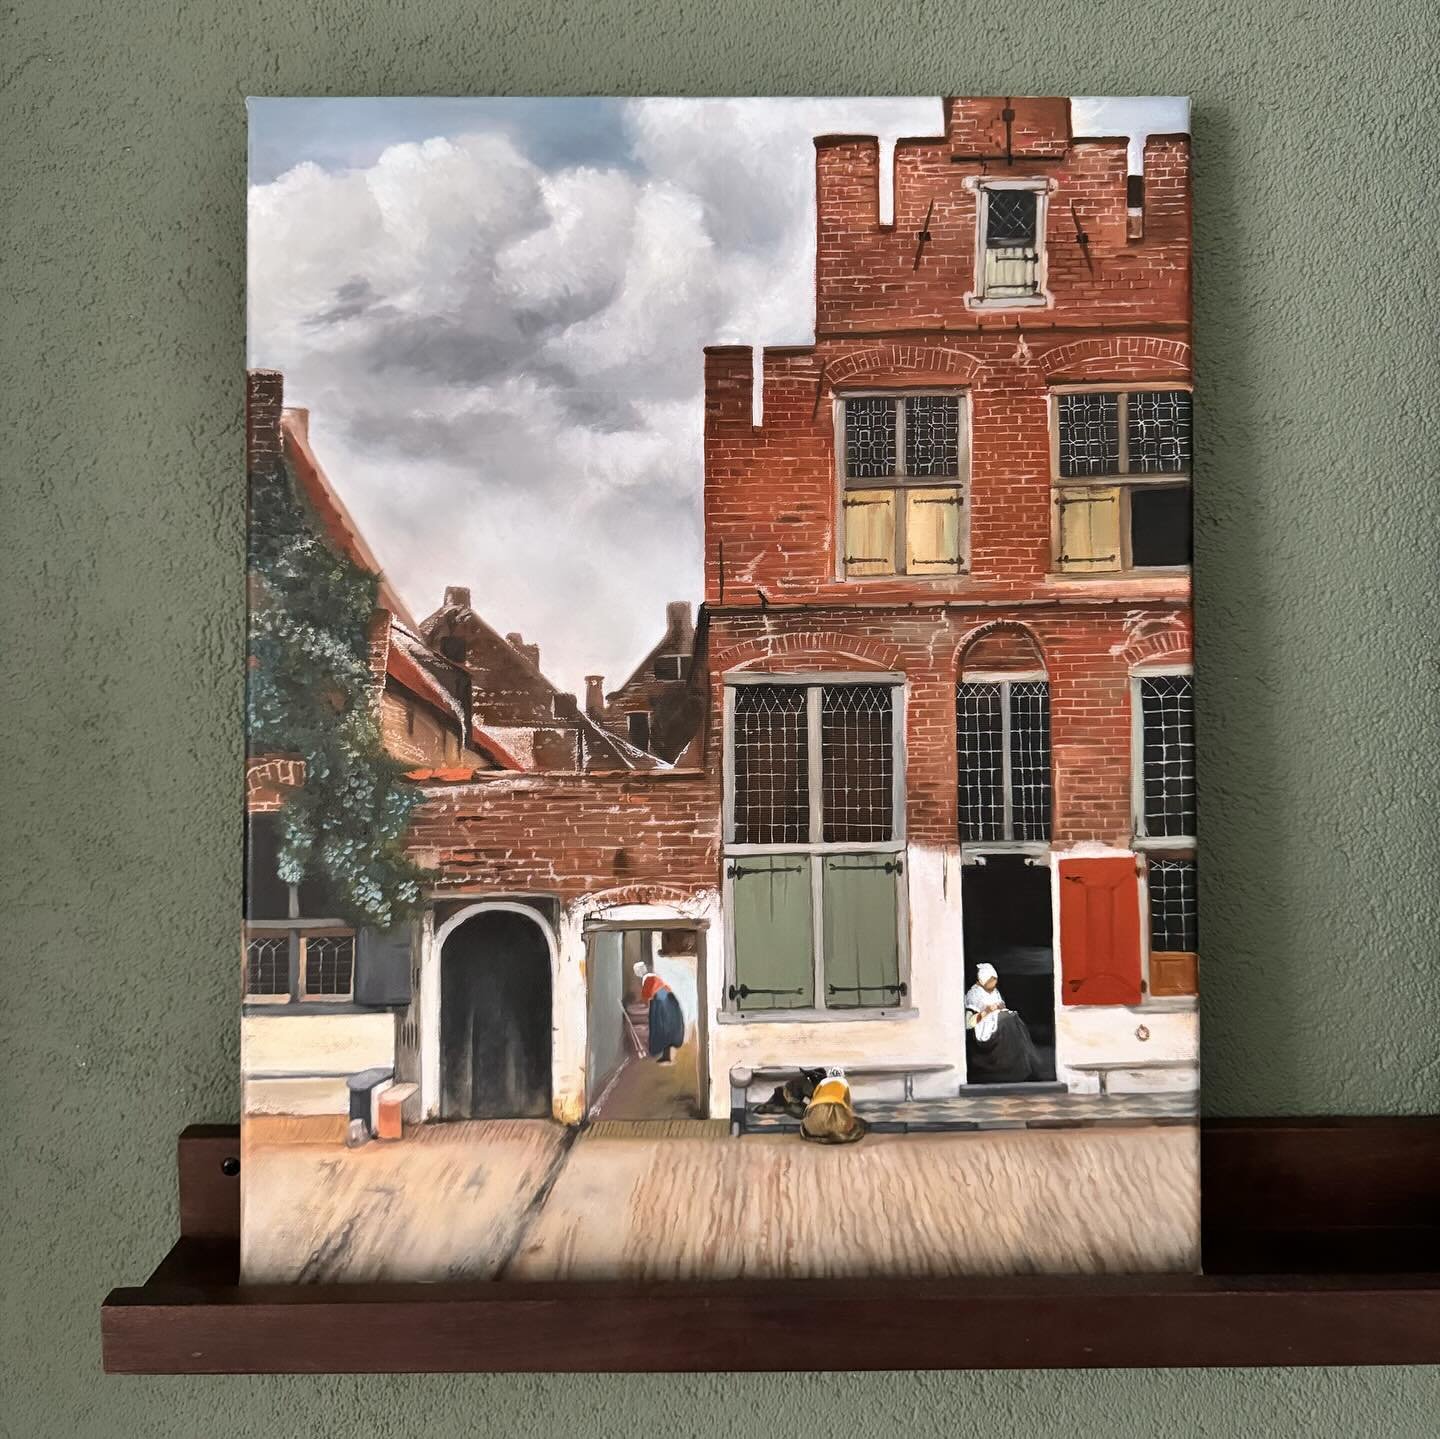 Mijn kopie van het straatje van Vermeer ✨🎨 

#johannesvermeer #straatjevanvermeer #rembrandtoils #schilderen #passievoorkunst #rijksmuseum #rijksstudio